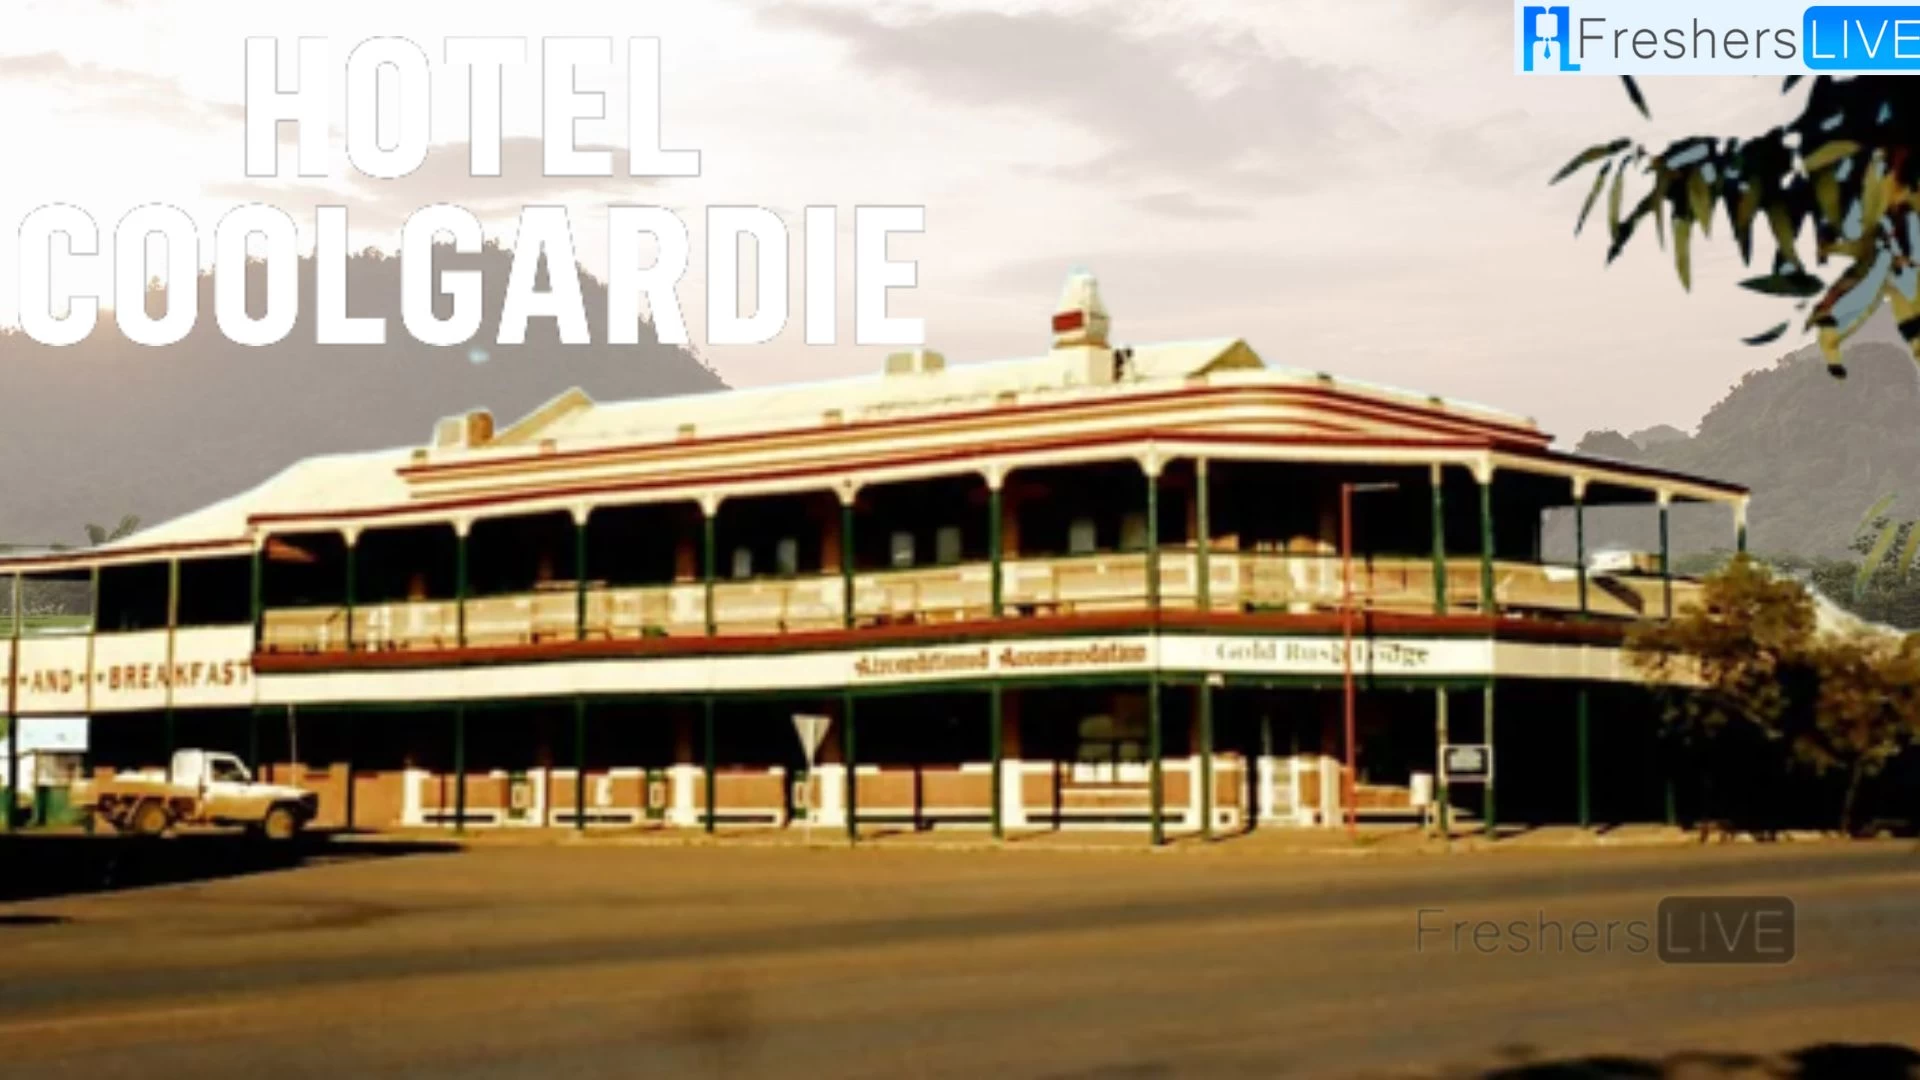 Explicación del final de Hotel Coolgardie, fecha de lanzamiento, reparto, trama, resumen, dónde mirar y más